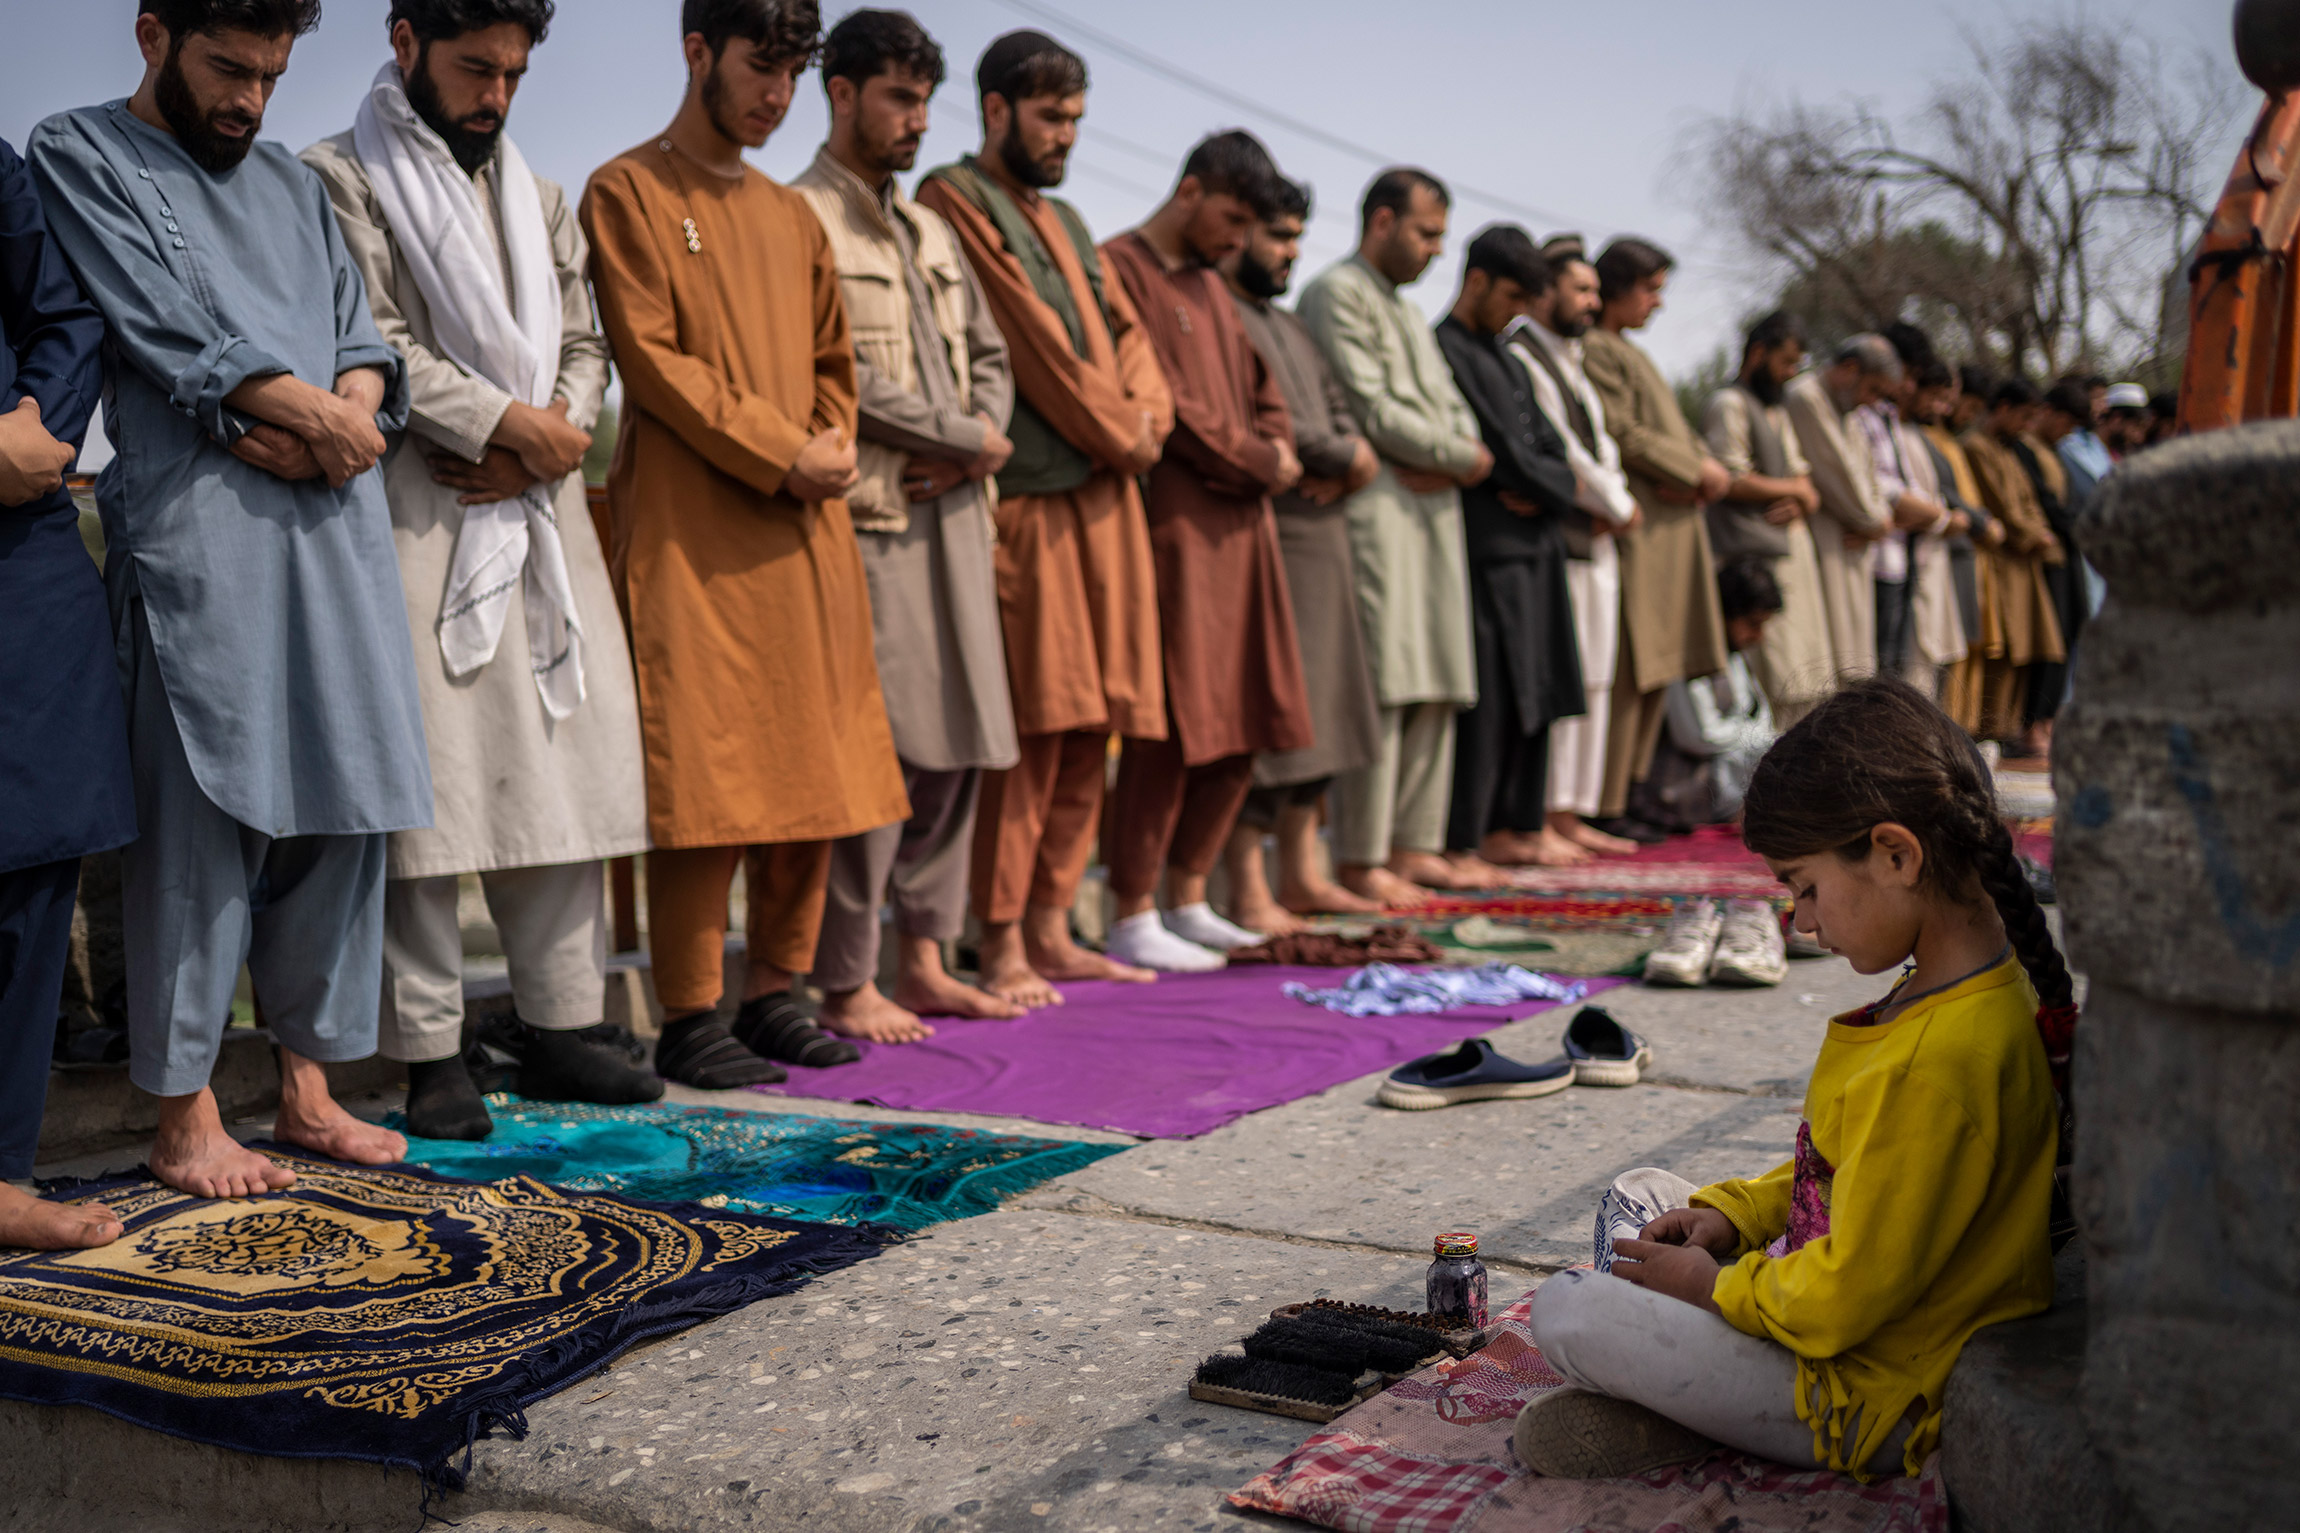 На фото:  девочка, предлагающая услуги по чистке обуви, во время пятничной молитвы в Кабуле

Талибы объясняли закрытие школ для девочек старше семи лет тем, что это &laquo;временная задержка&raquo;, и они работают над созданием условий для учениц, говорил глава организации Save Children в Афганистане Кристофер&nbsp;Ньяманди. За последние 20 лет количество девочек, которые посещают школы, серьезно выросло, и талибам очень трудно обратить этот процесс, считает Ньямади. Организация наблюдает, что в некоторых провинциях участники &laquo;Талибана&raquo; проявляют гибкость в этом вопросе, но при этом есть регионы, где они запрещают женщинам учиться и работать